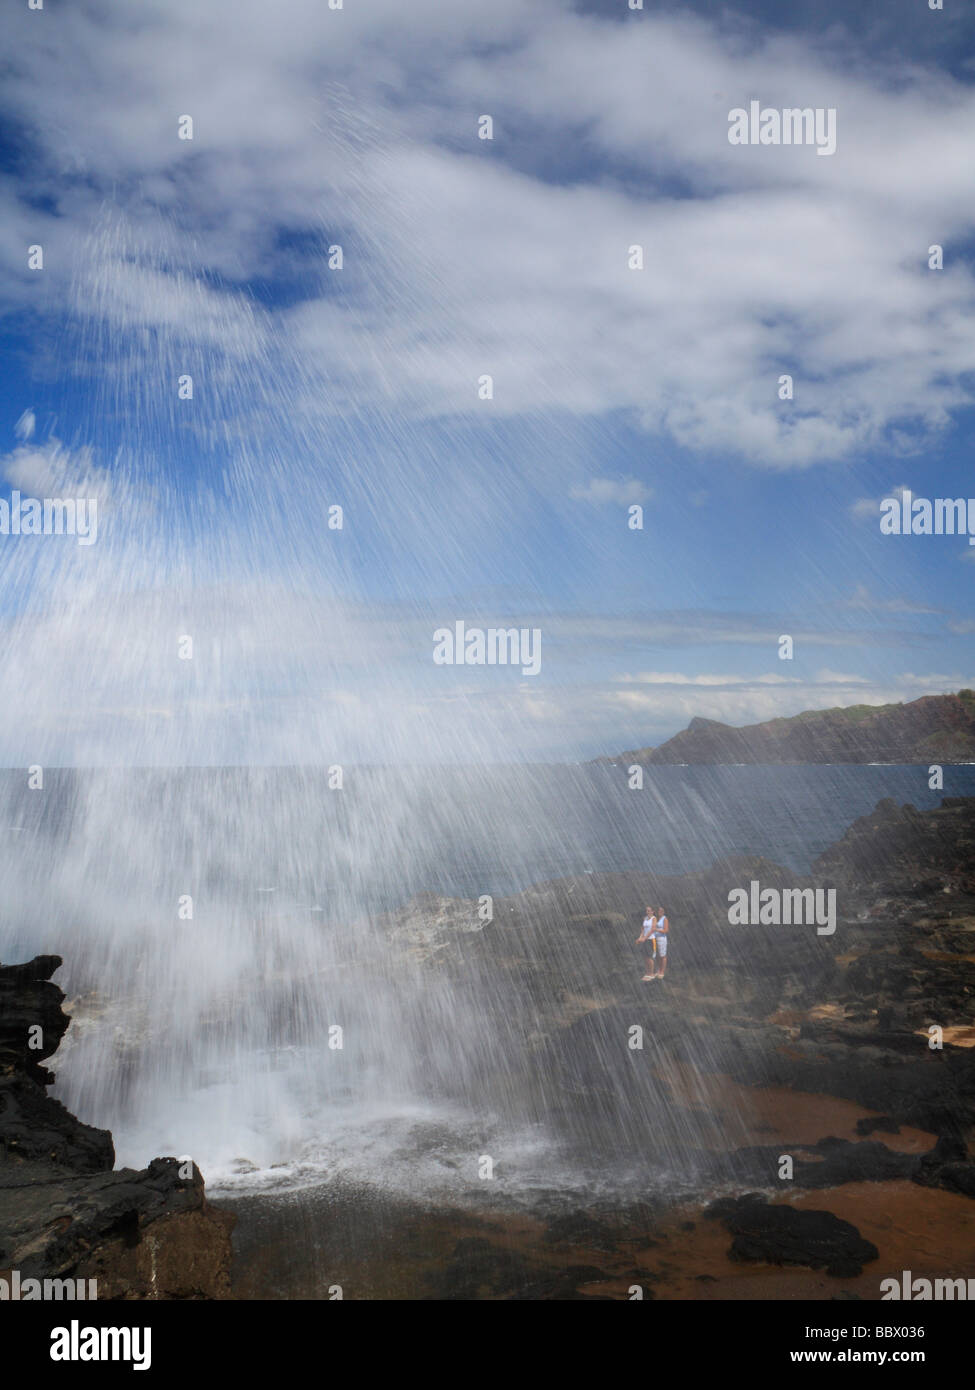 Der Ausbruch des Nakalele Blasloch auf der Nordküste von Maui, mit Wasser hoch in die Luft schafft einen Schleier auf dem Weg nach unten geblasen. Stockfoto